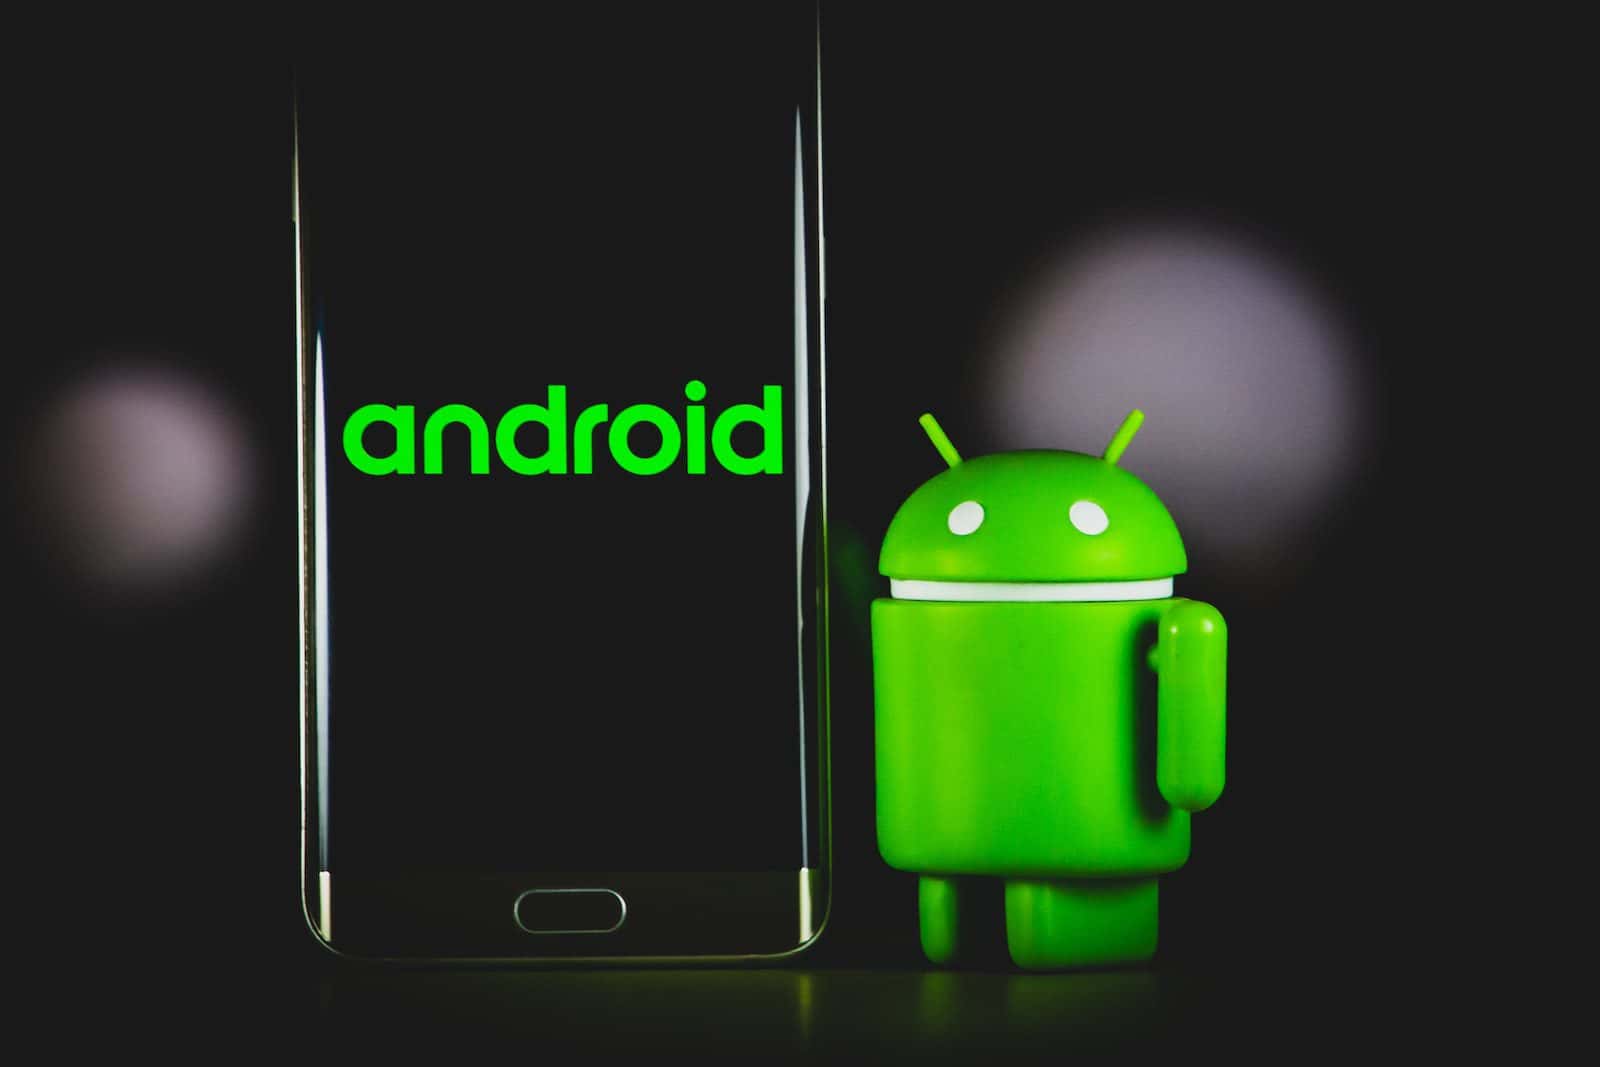 Ốp lưng iphone xanh ếch bên cạnh điện thoại thông minh android samsung đen